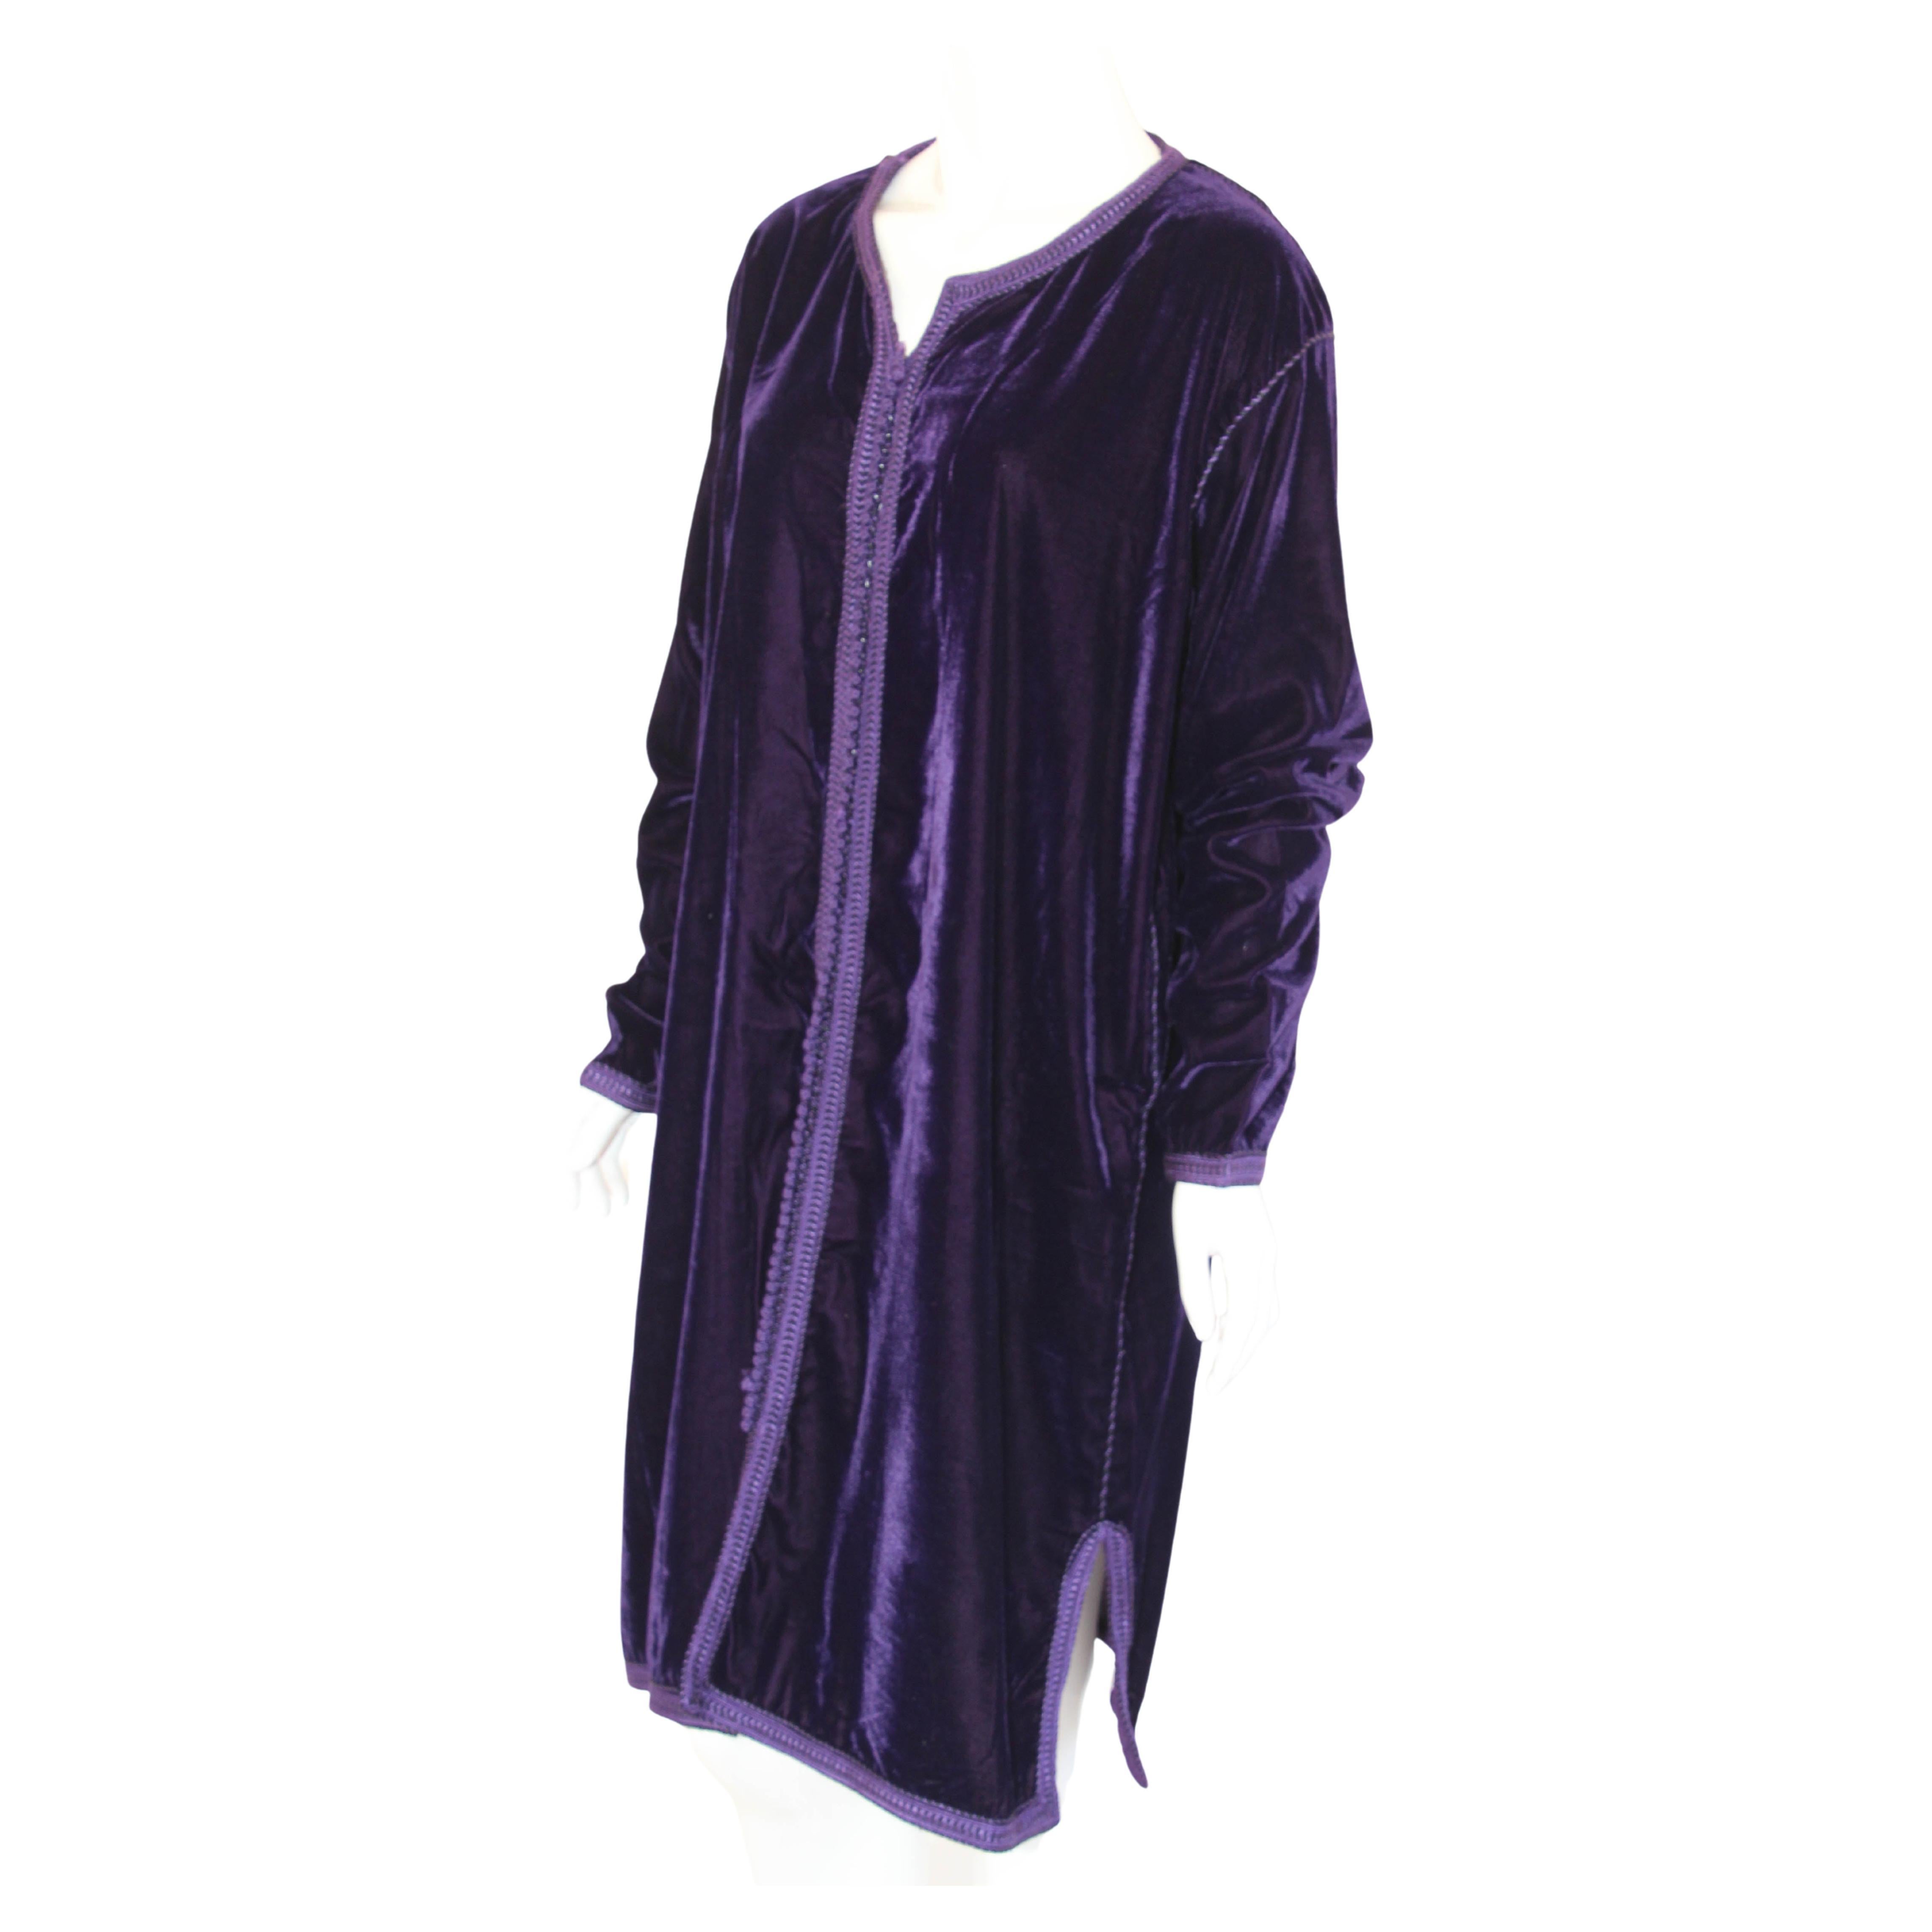 Elegant caftan marocain en velours violet brodé.
vers les années 1960.
Cette robe gilet kaftan en velours est brodée et embellie entièrement à la main.
Unique en son genre  Robe marocaine mauresque du Moyen-Orient.
Le kaftan présente une encolure